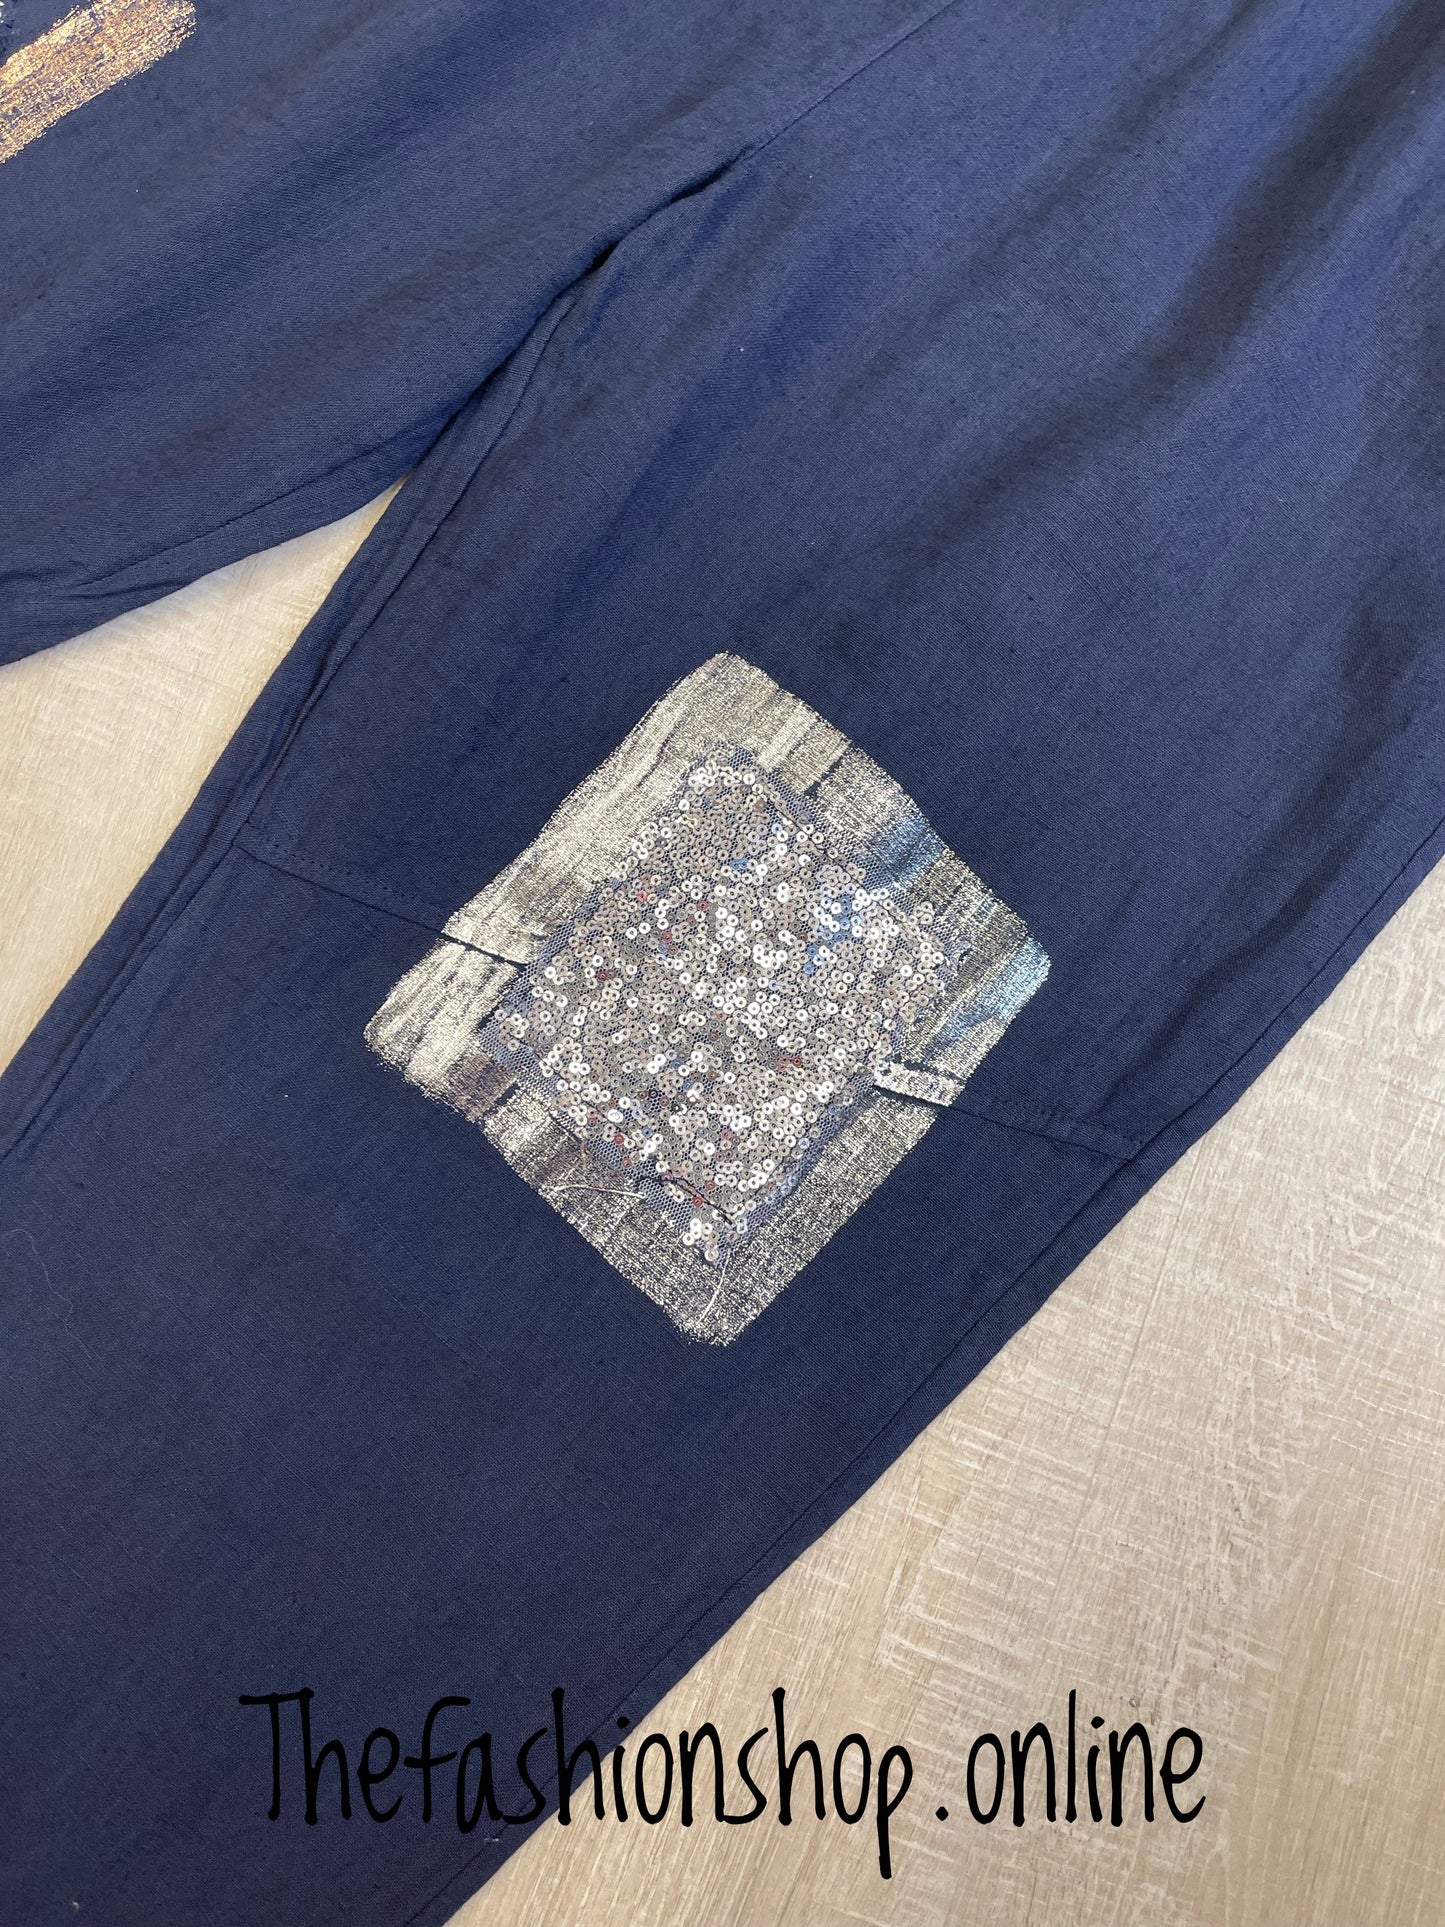 Navy blue linen mix sparkle trousers 8-14